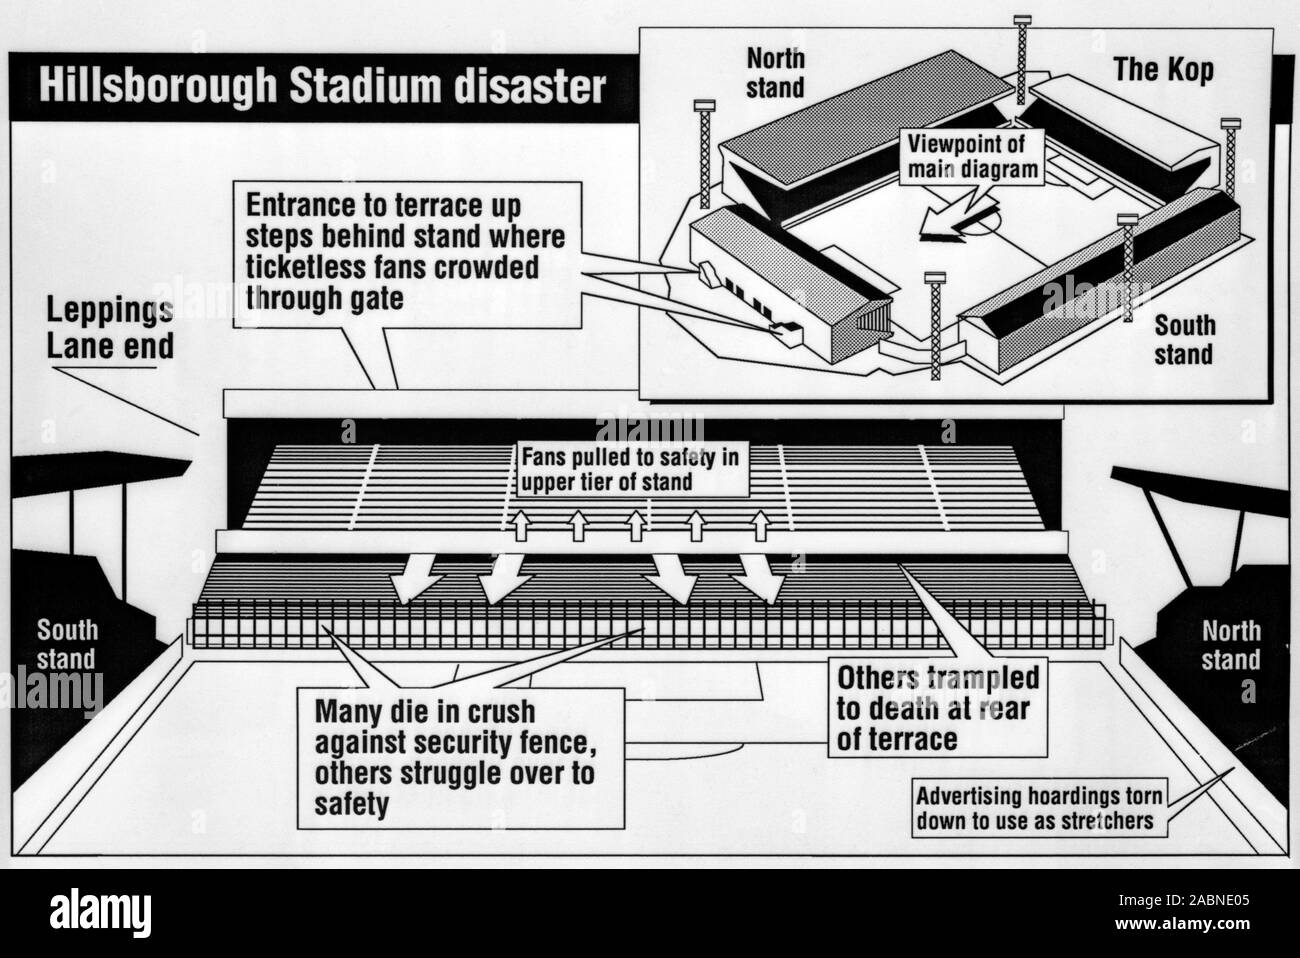 PA un grafico che mostra i dettagli di Sheffield mercoledì in Hillsborough Stadium, e della zona dove la tragedia dispiegato durante la FA Cup Semi gioco finale tra Liverpool e Nottingham Forest. Foto Stock